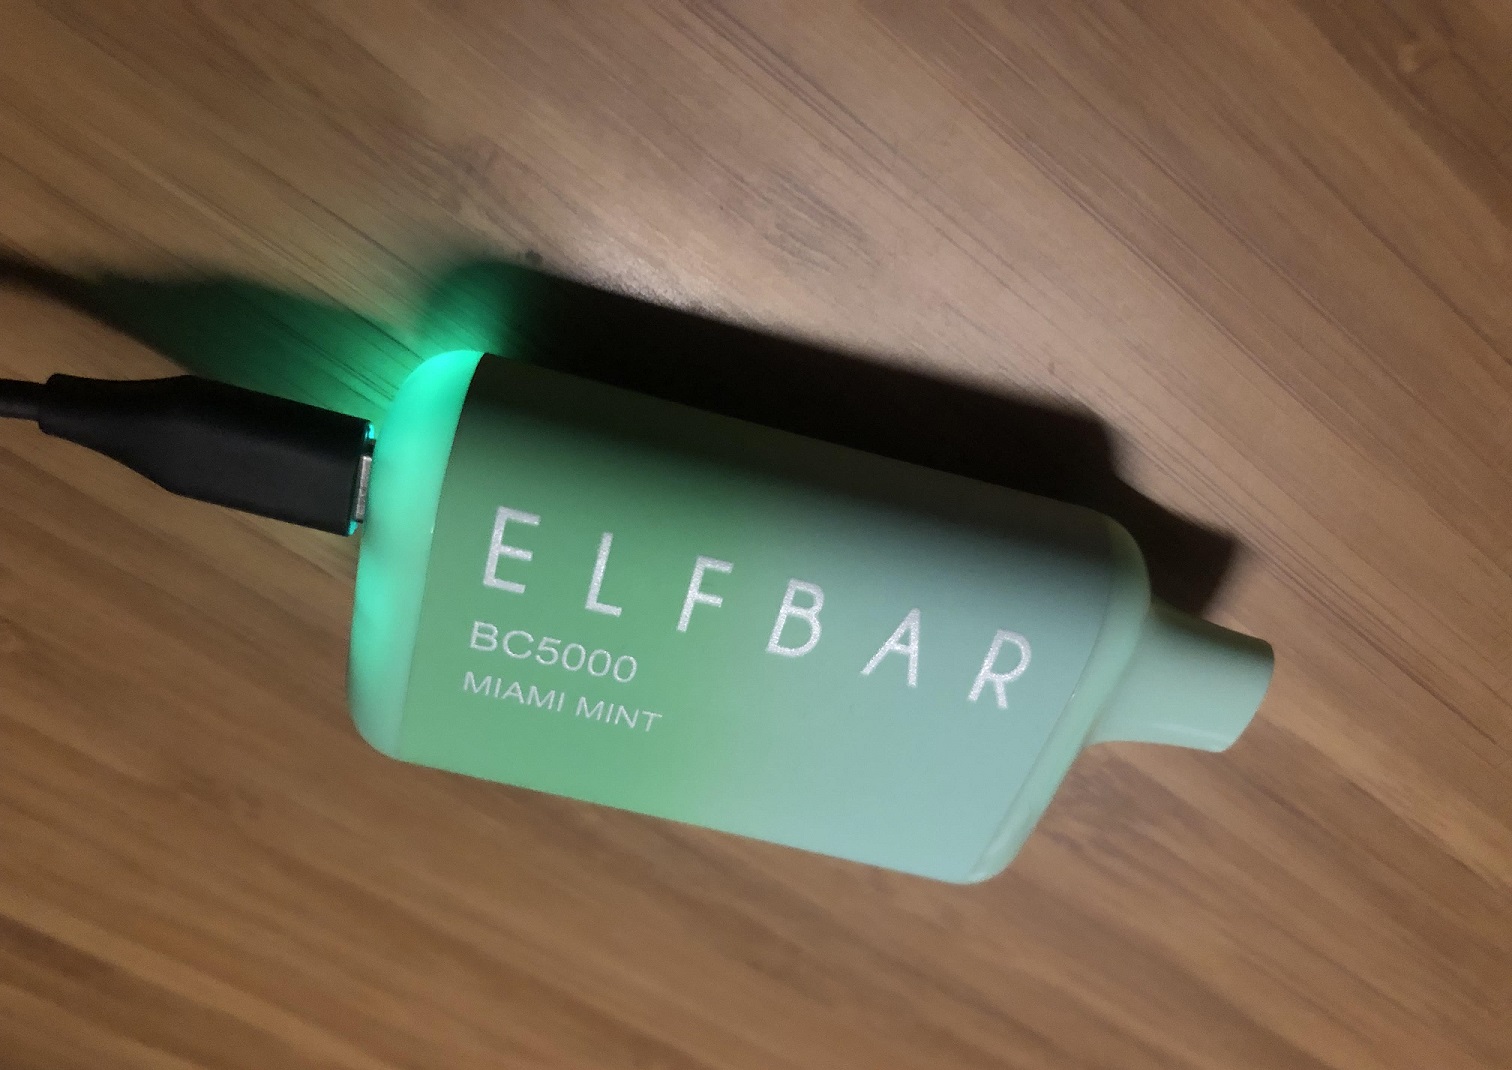 Elf Bar Charging